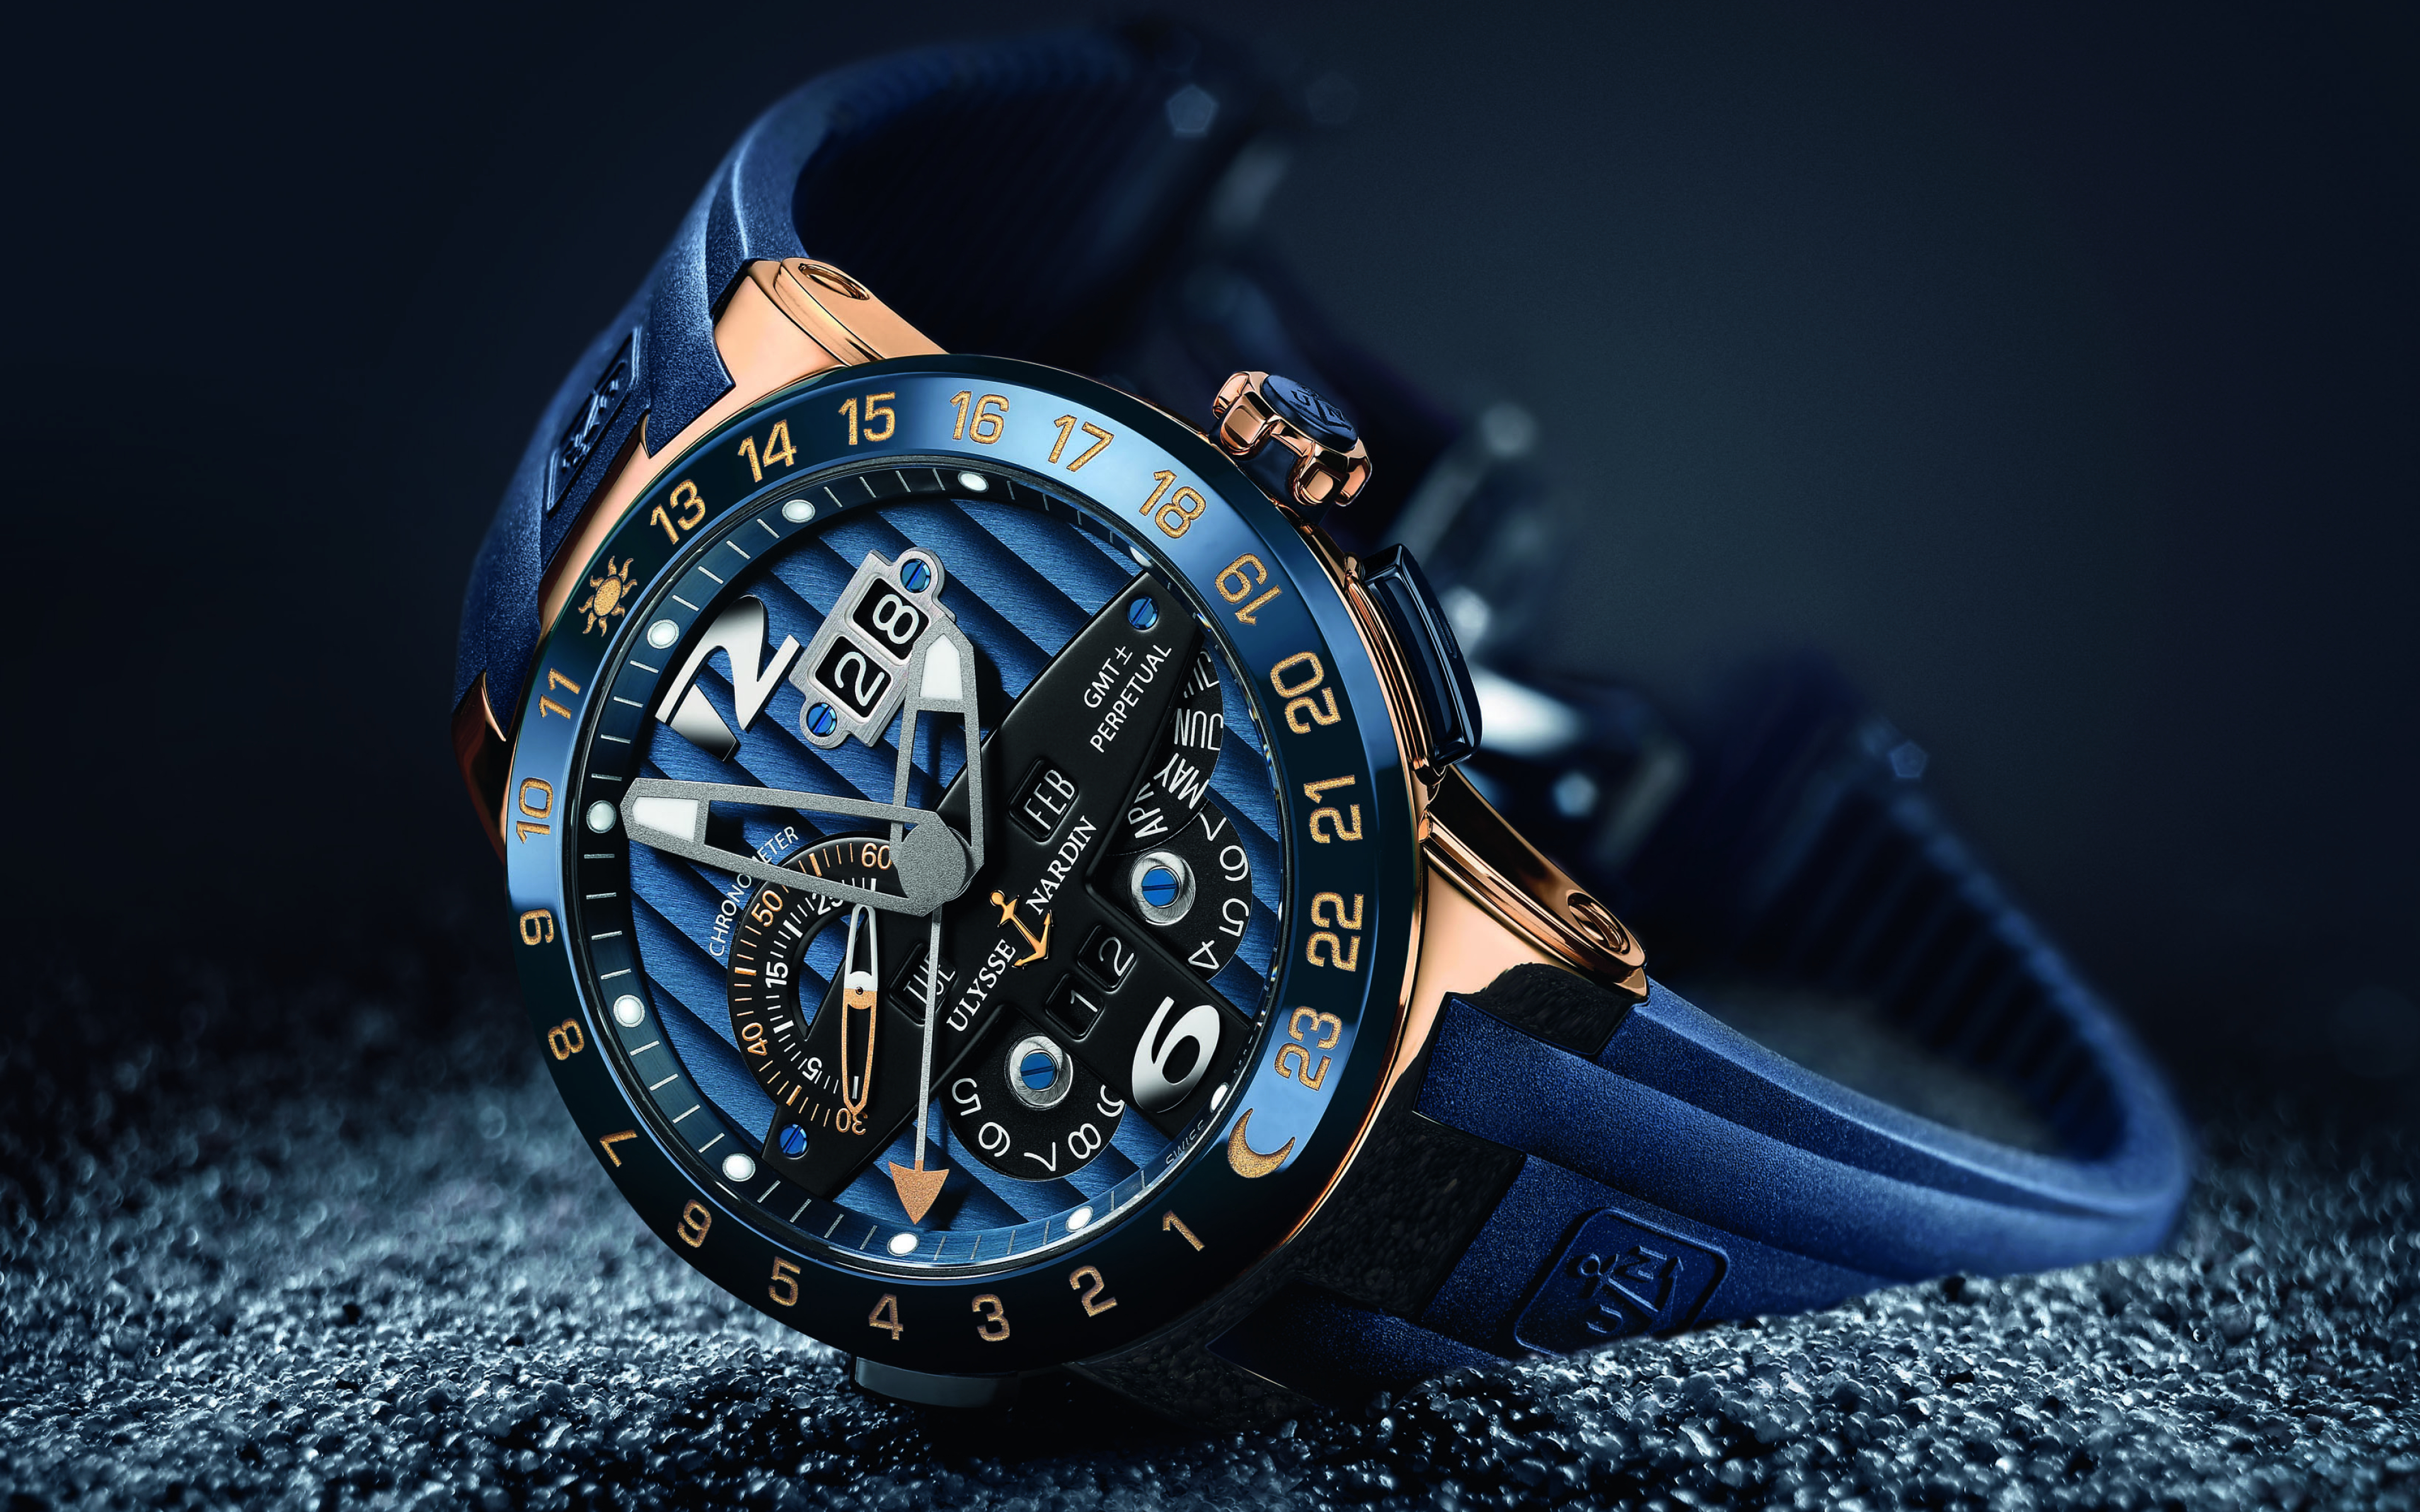 Luxury watch. Часы Улисс Нордин. Улисс Нордин часы мужские. Швейцарские часы мужские Ulysse Nardin. Часы Луис Нардин синие.